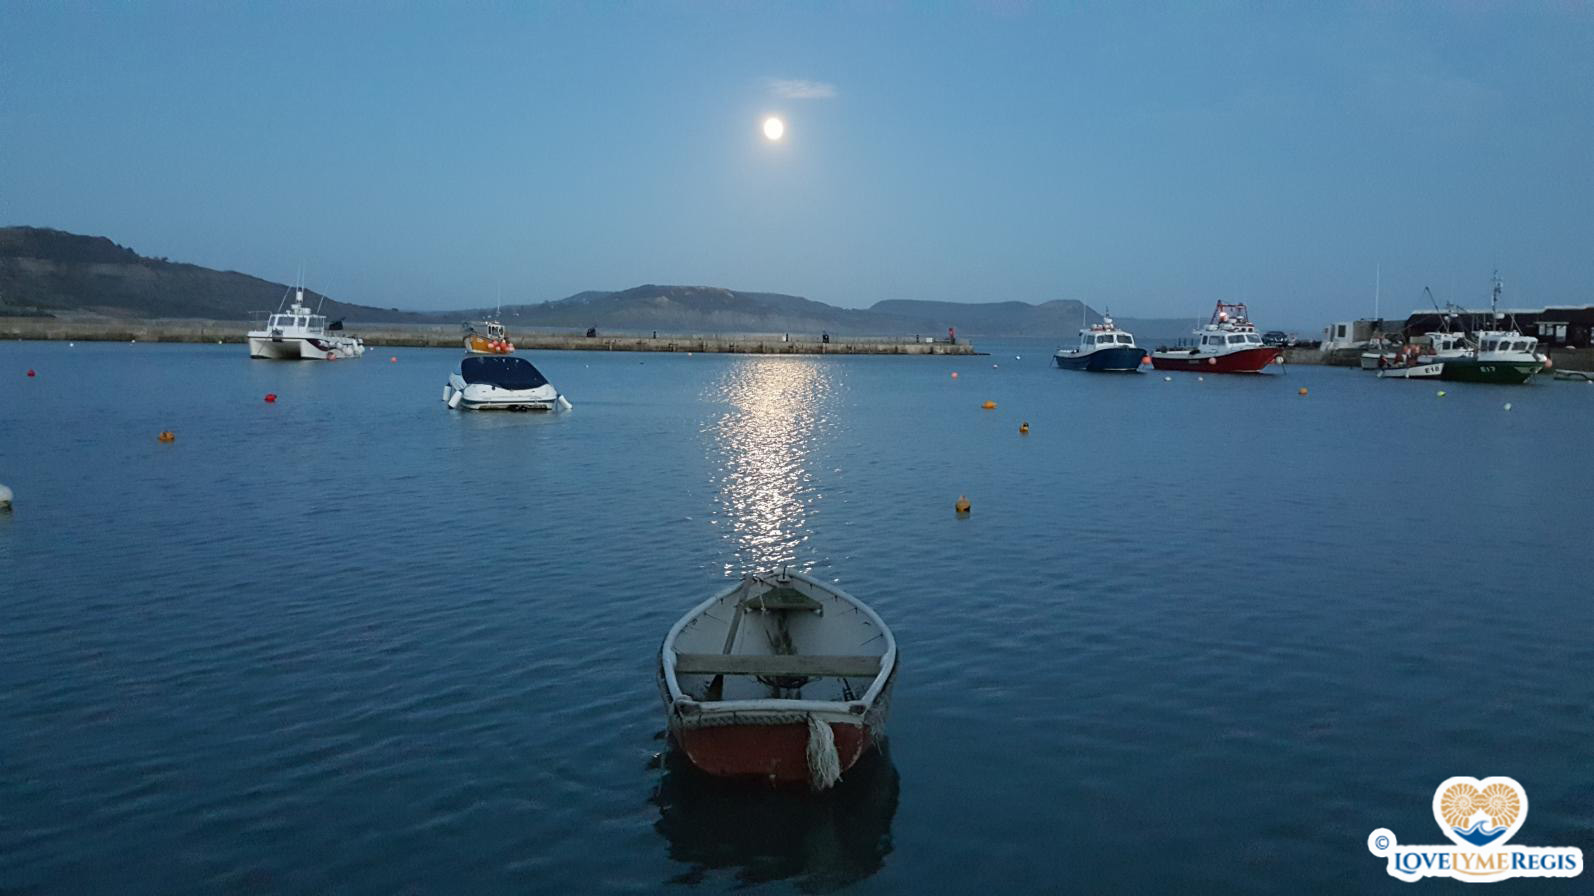 Moonlit harbour